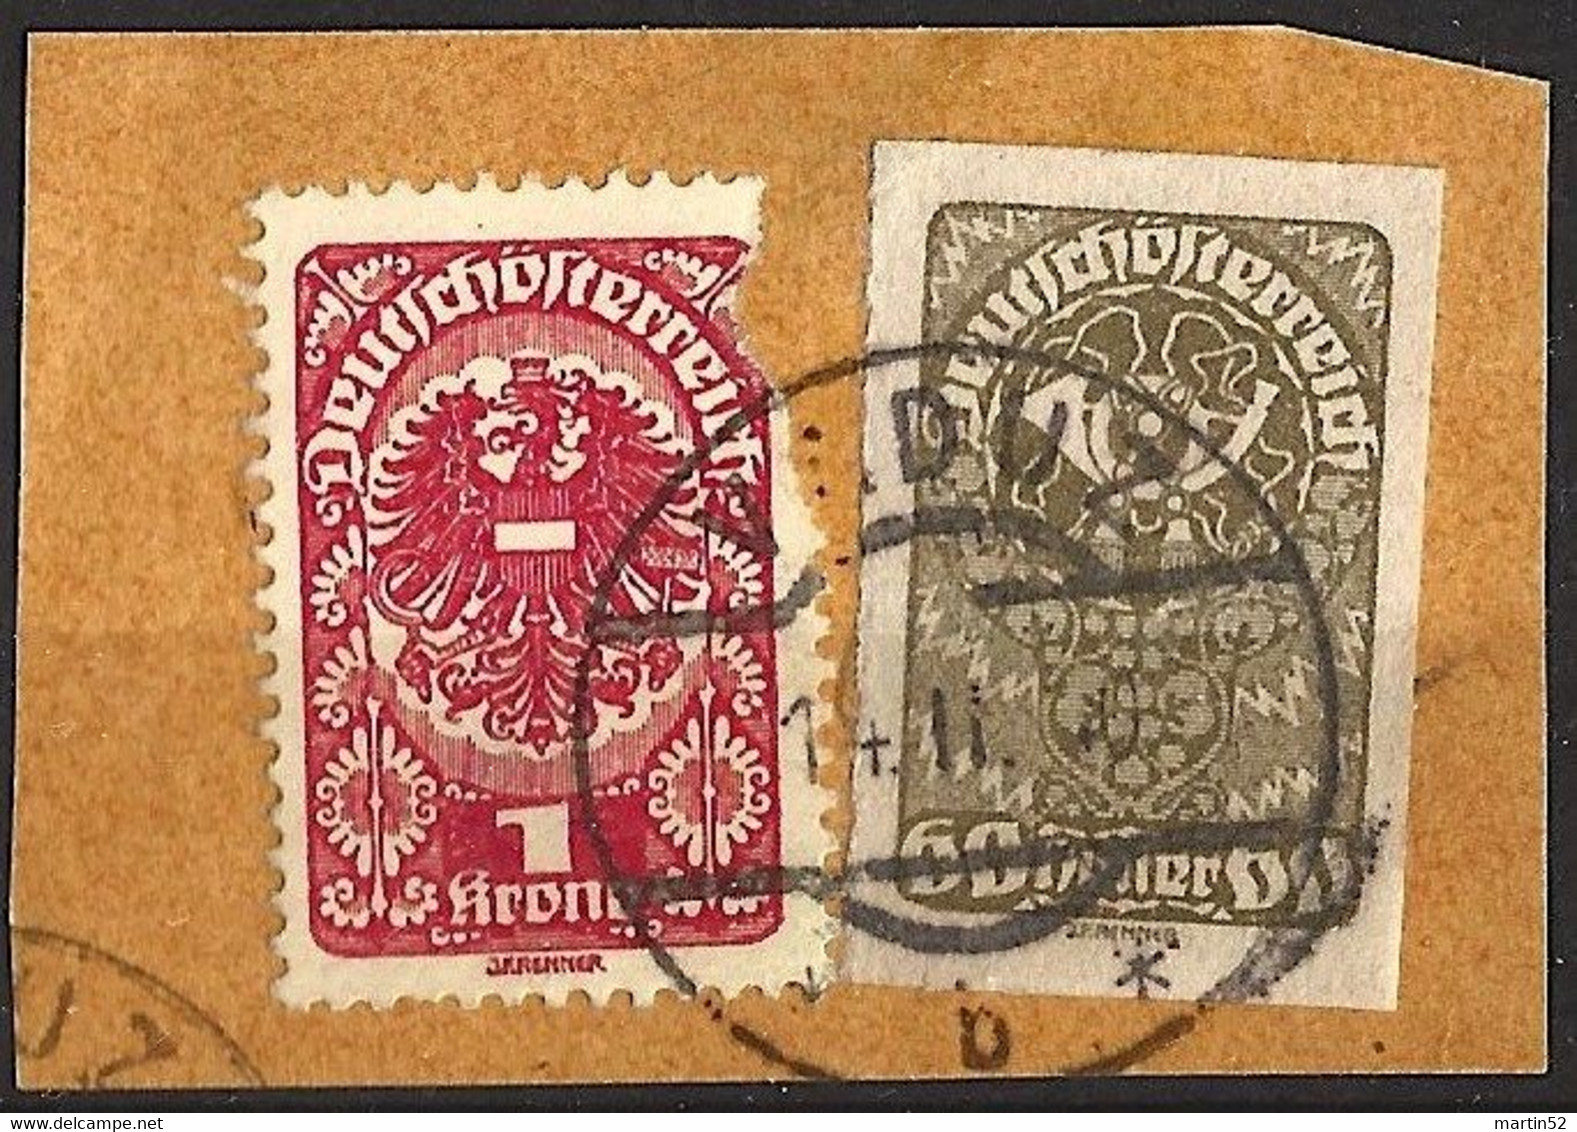 Liechtenstein Mitläufer 1920: Deutschösterreich Posthorn 60 Heller 1919 Michel-N° 283 O VADUZ 14.II.20 (LBK CHF 60.00) - ...-1912 Vorphilatelie